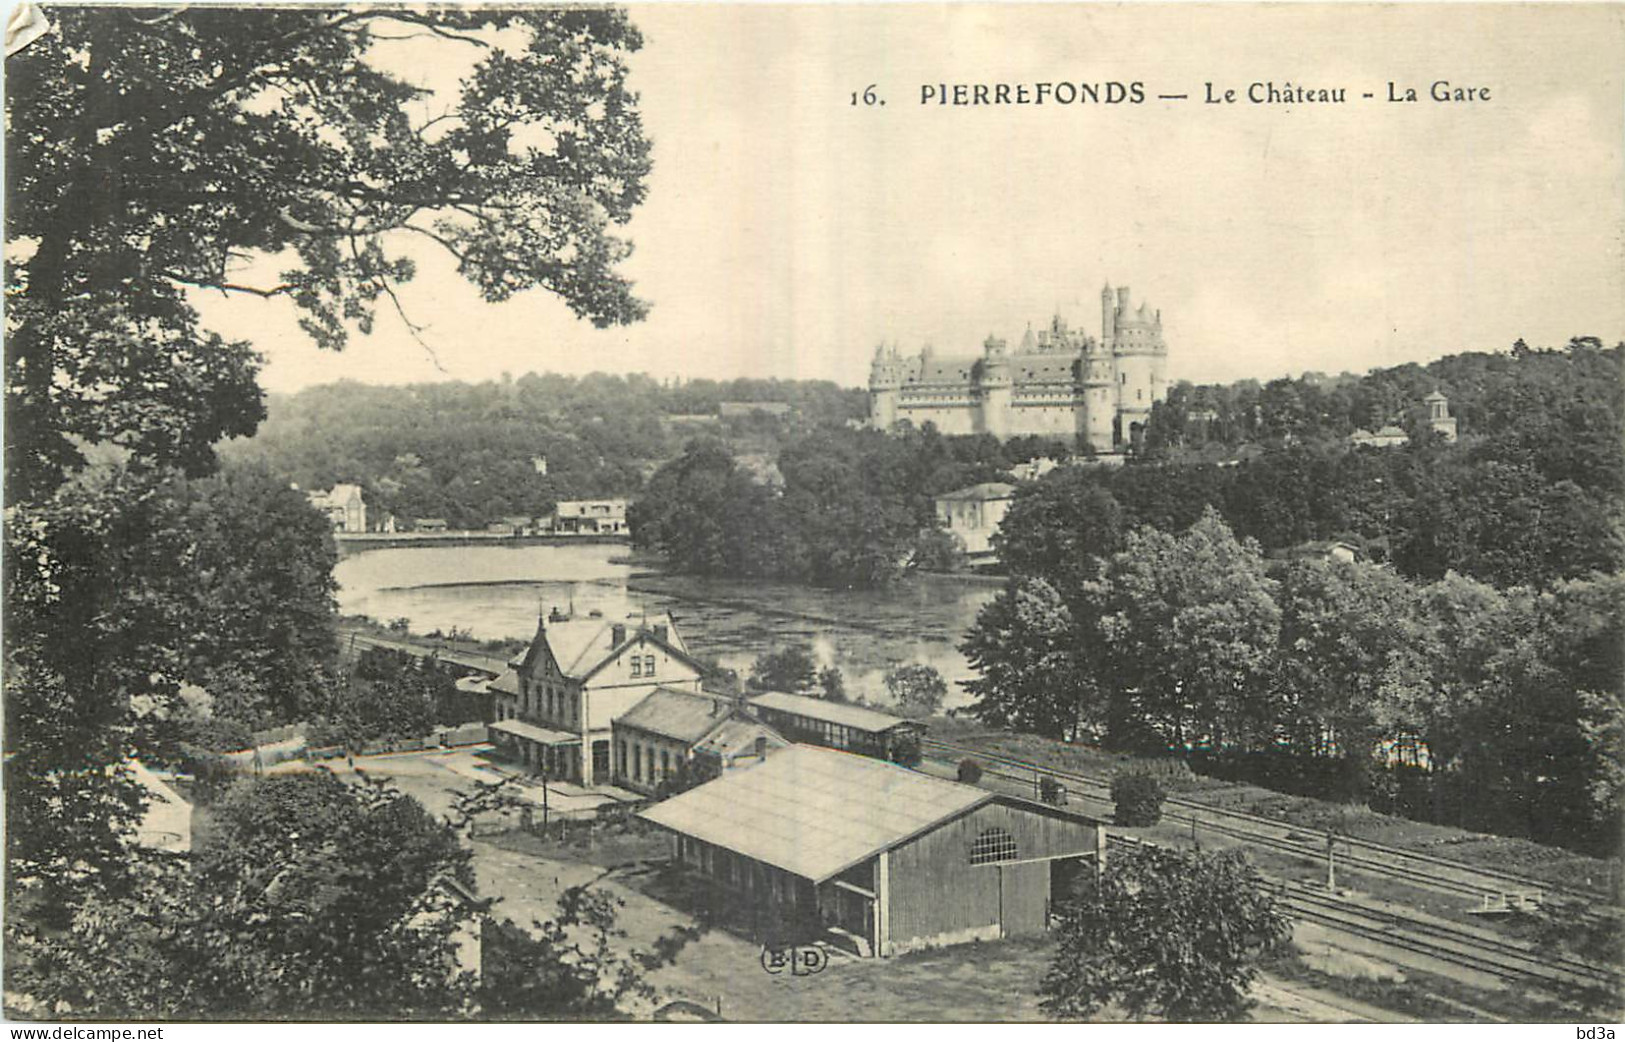  60 - PIERREFONDS - LE CHATEAU - LA GARE - E.L.D. - 16 - Pierrefonds